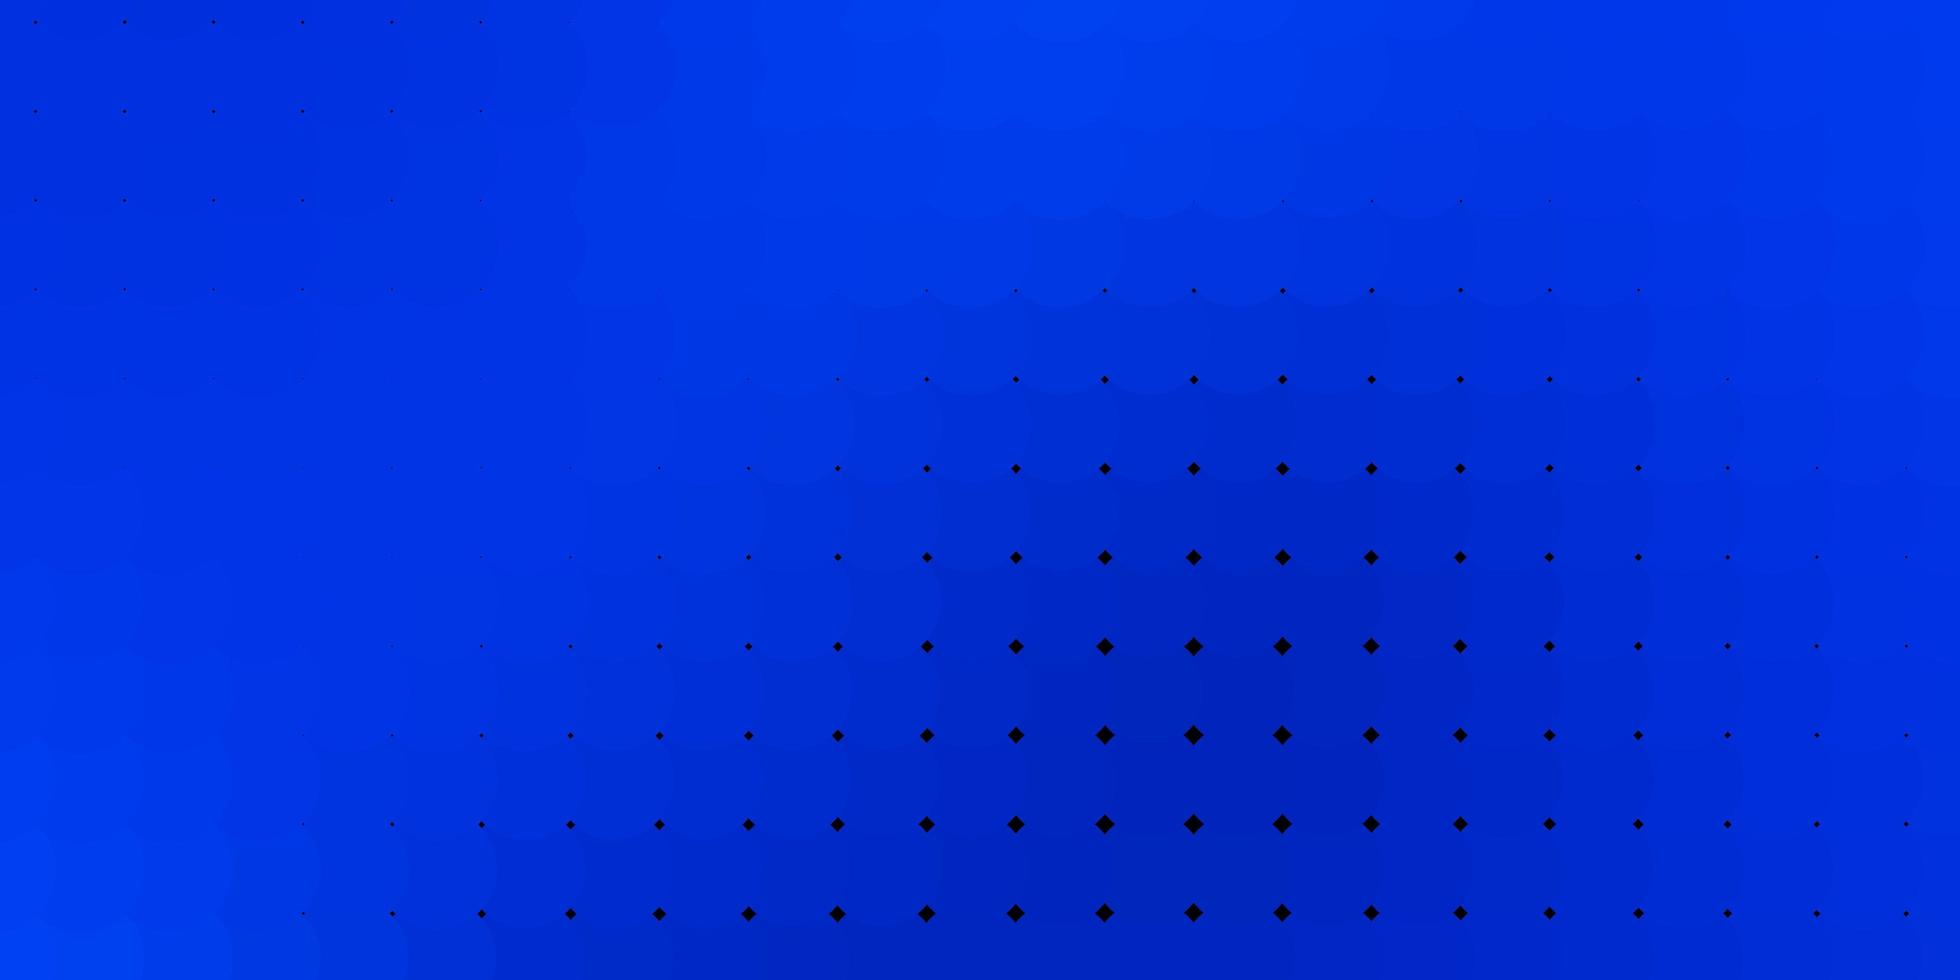 texture vettoriale blu chiaro con dischi. illustrazione astratta moderna con forme di cerchio colorato. design per i tuoi annunci pubblicitari.